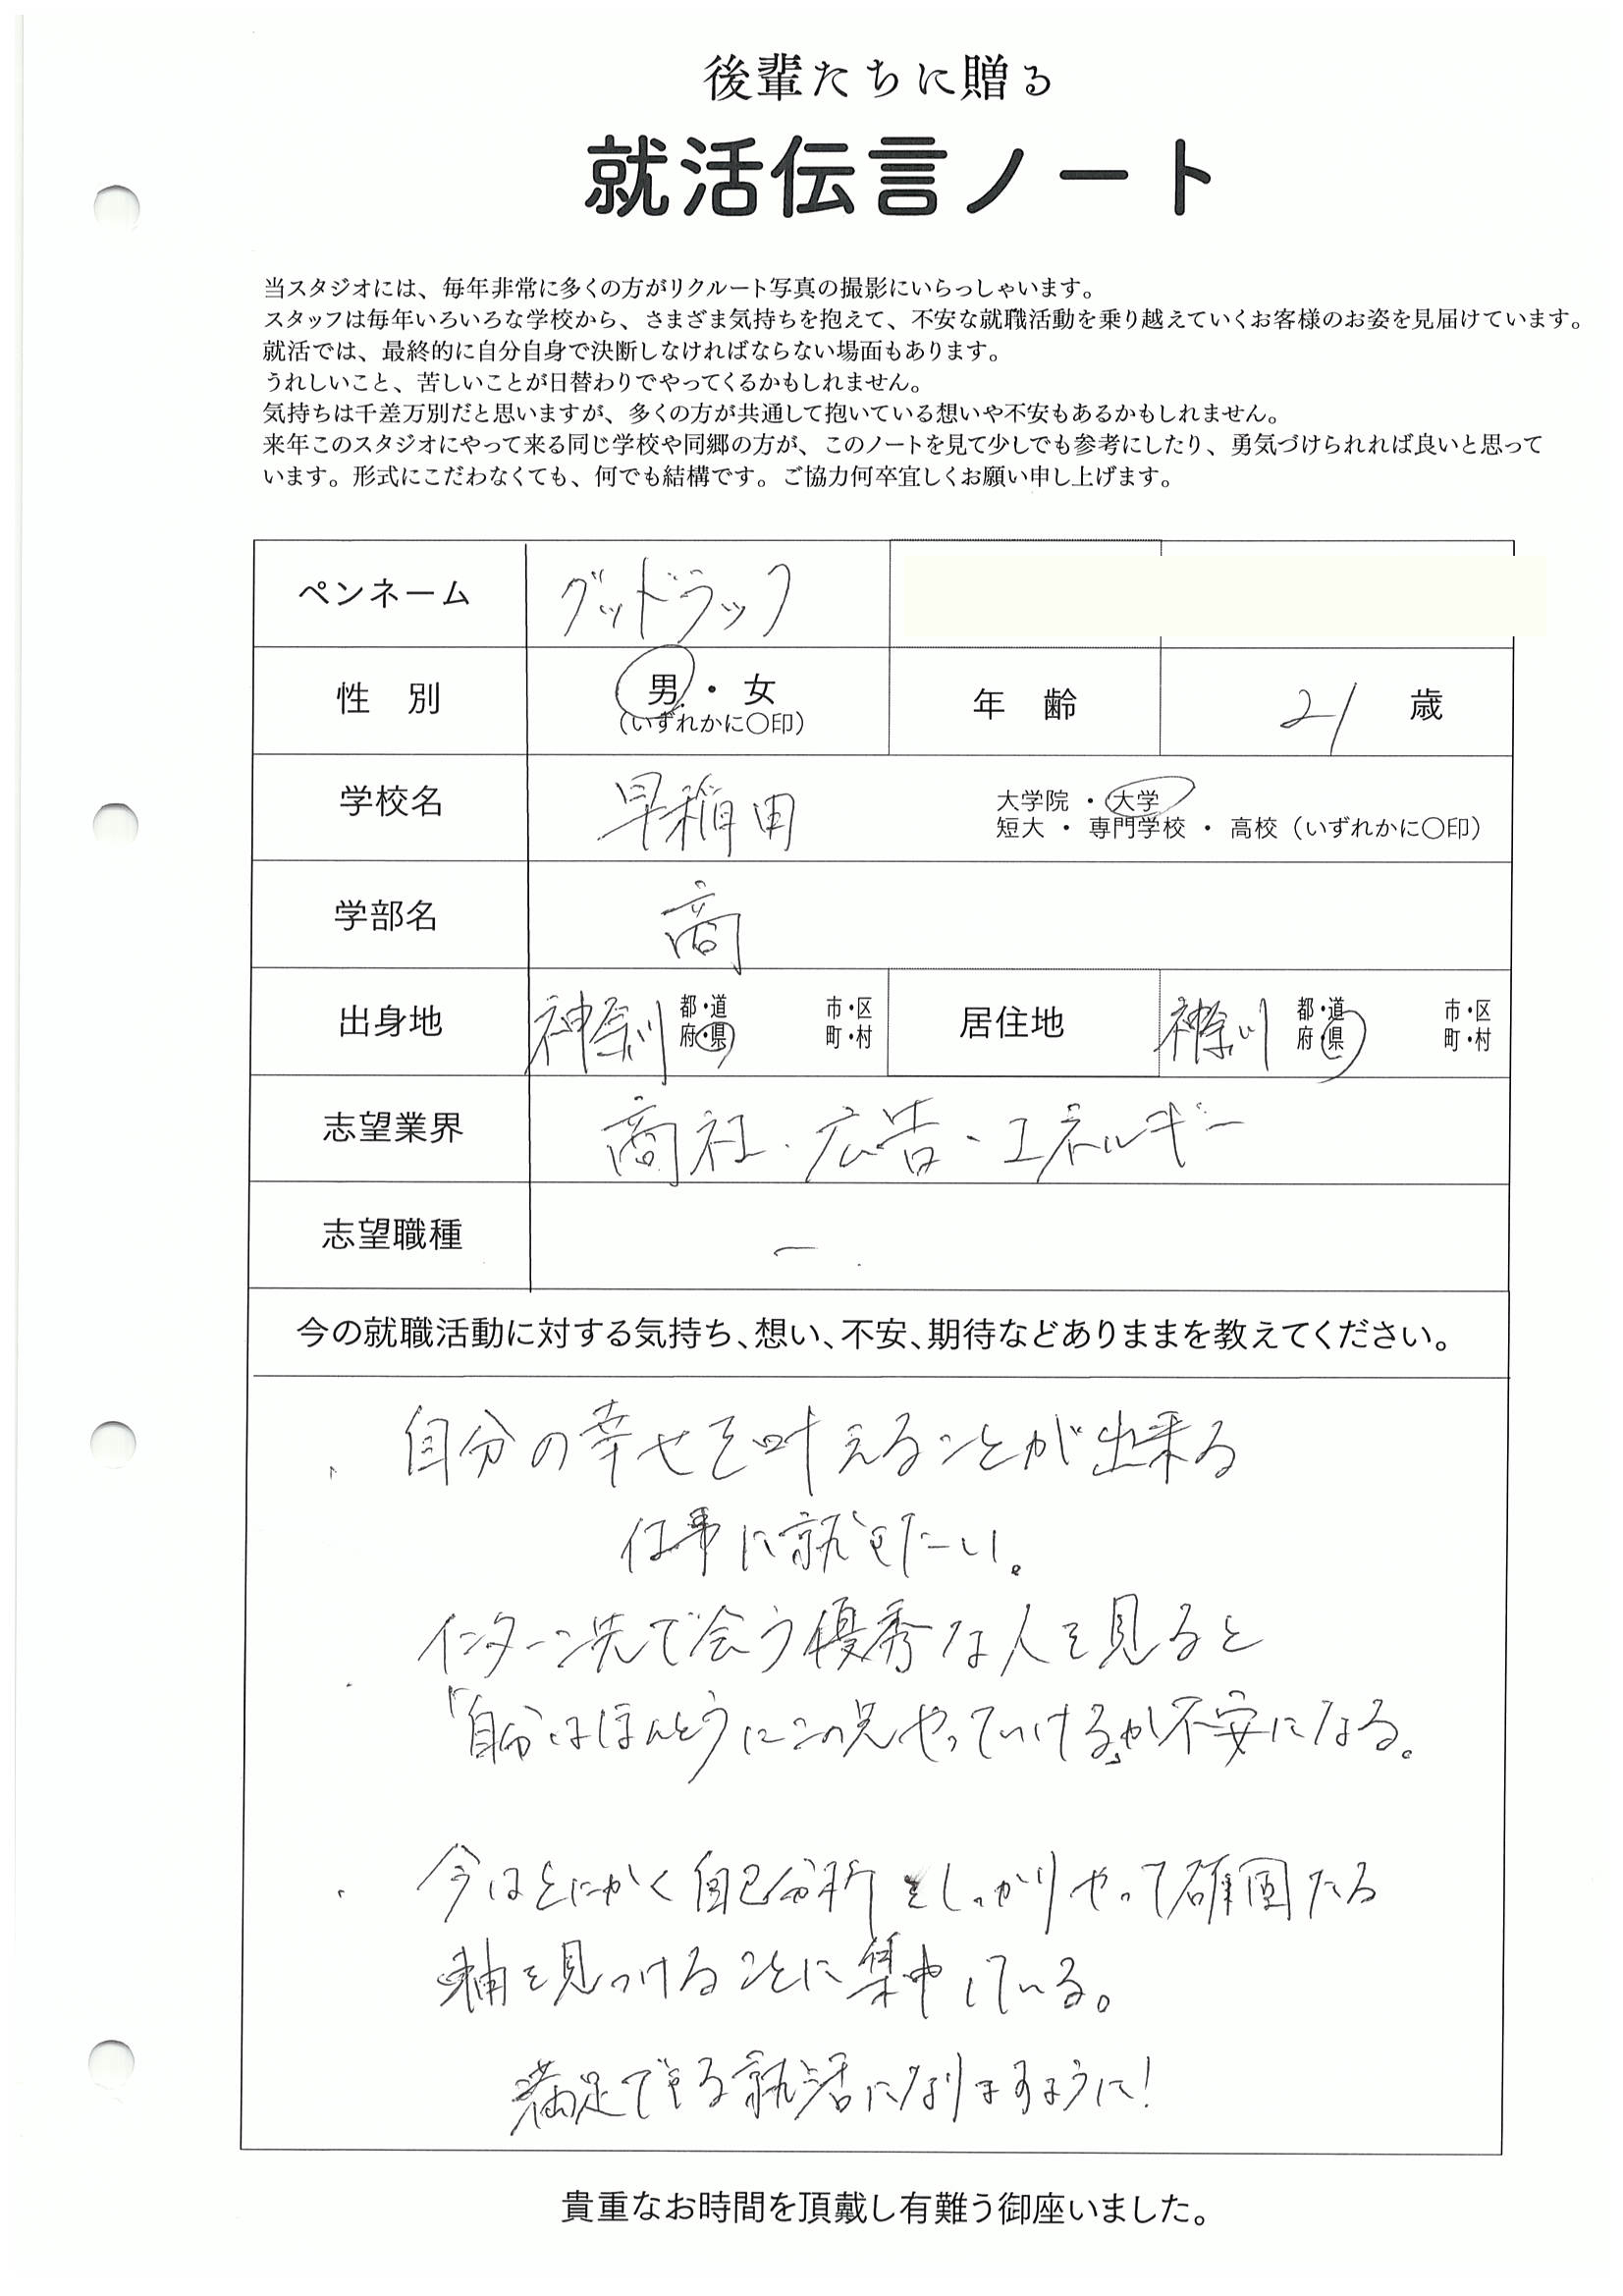 早稲田大学 商学部 グッドラックさんの直筆メッセージ リクルートフォトスタジオで就活証明写真を撮影